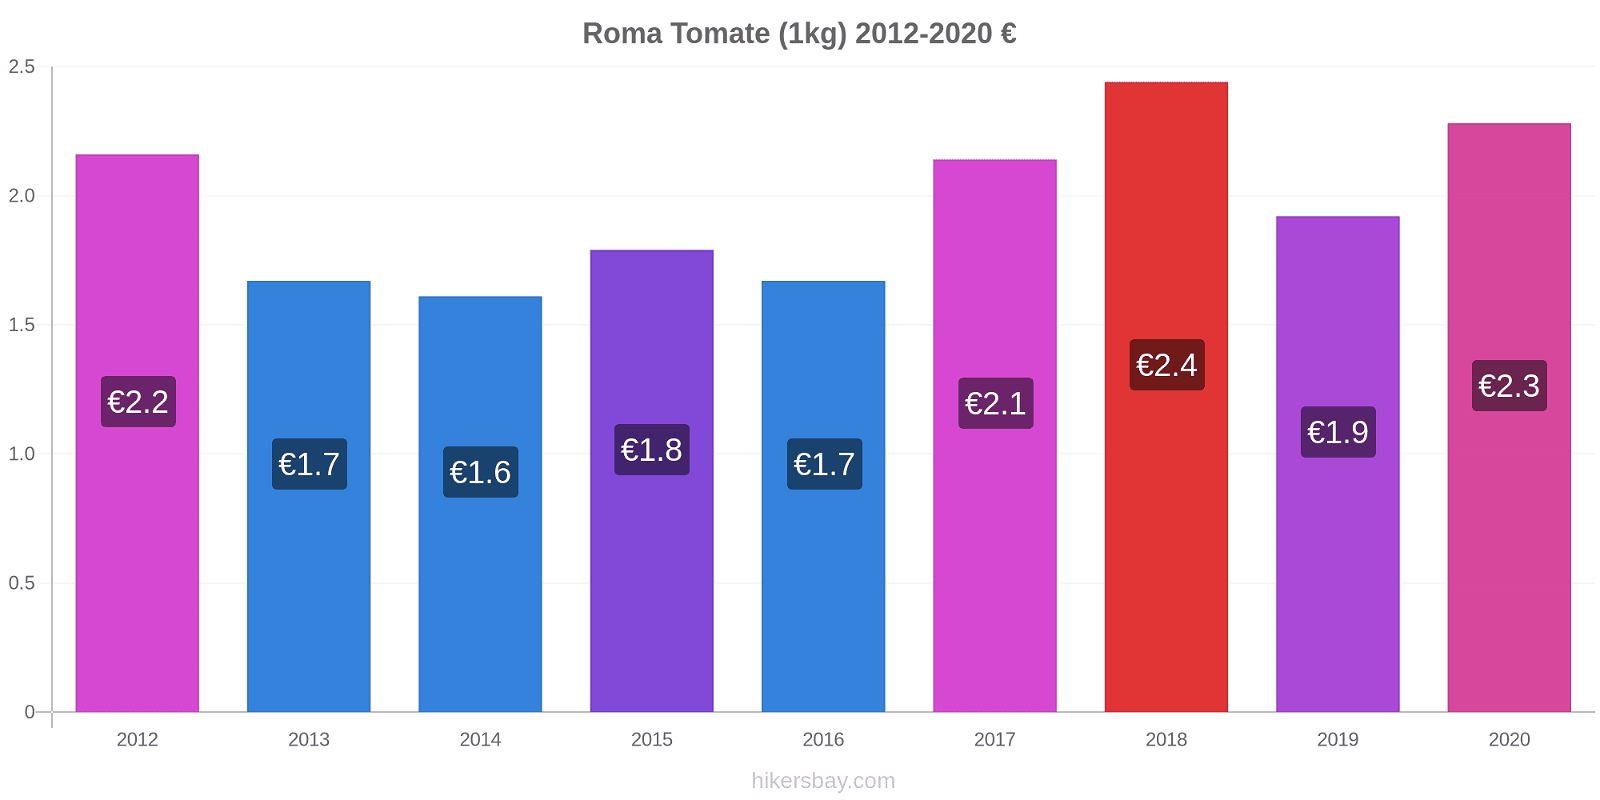 Roma variação de preço Tomate (1kg) hikersbay.com